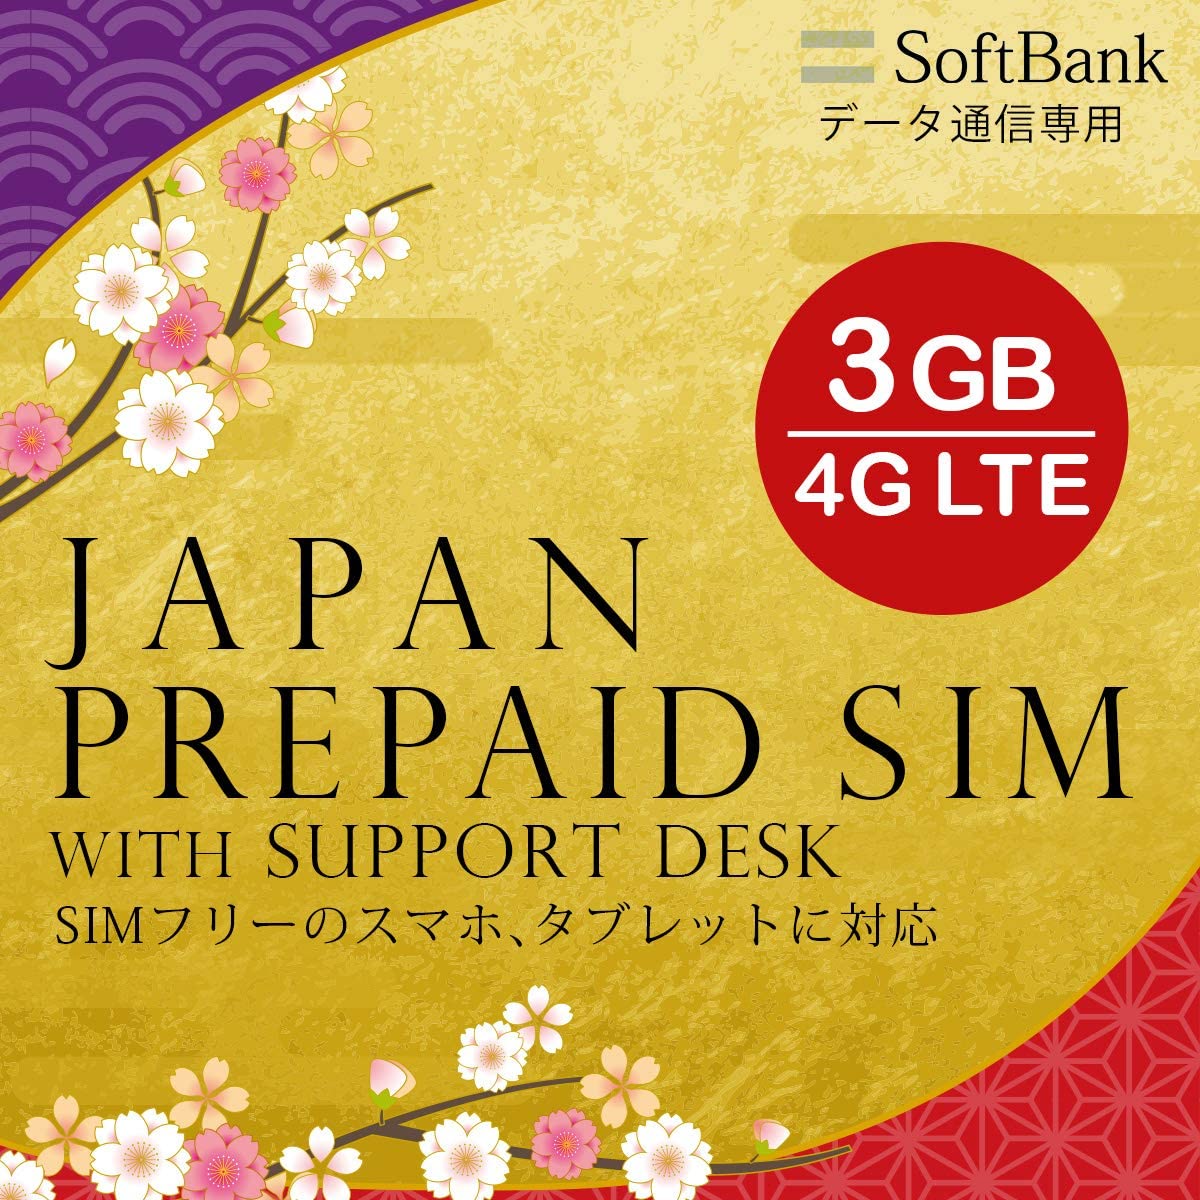 プリペイドsim プリペイド sim card 日本 softbank プリペイドsimカード 3GB マルチカットsim MicroSIM NanoSIM ソフトバンク 携帯 携帯電話 simフリー端末